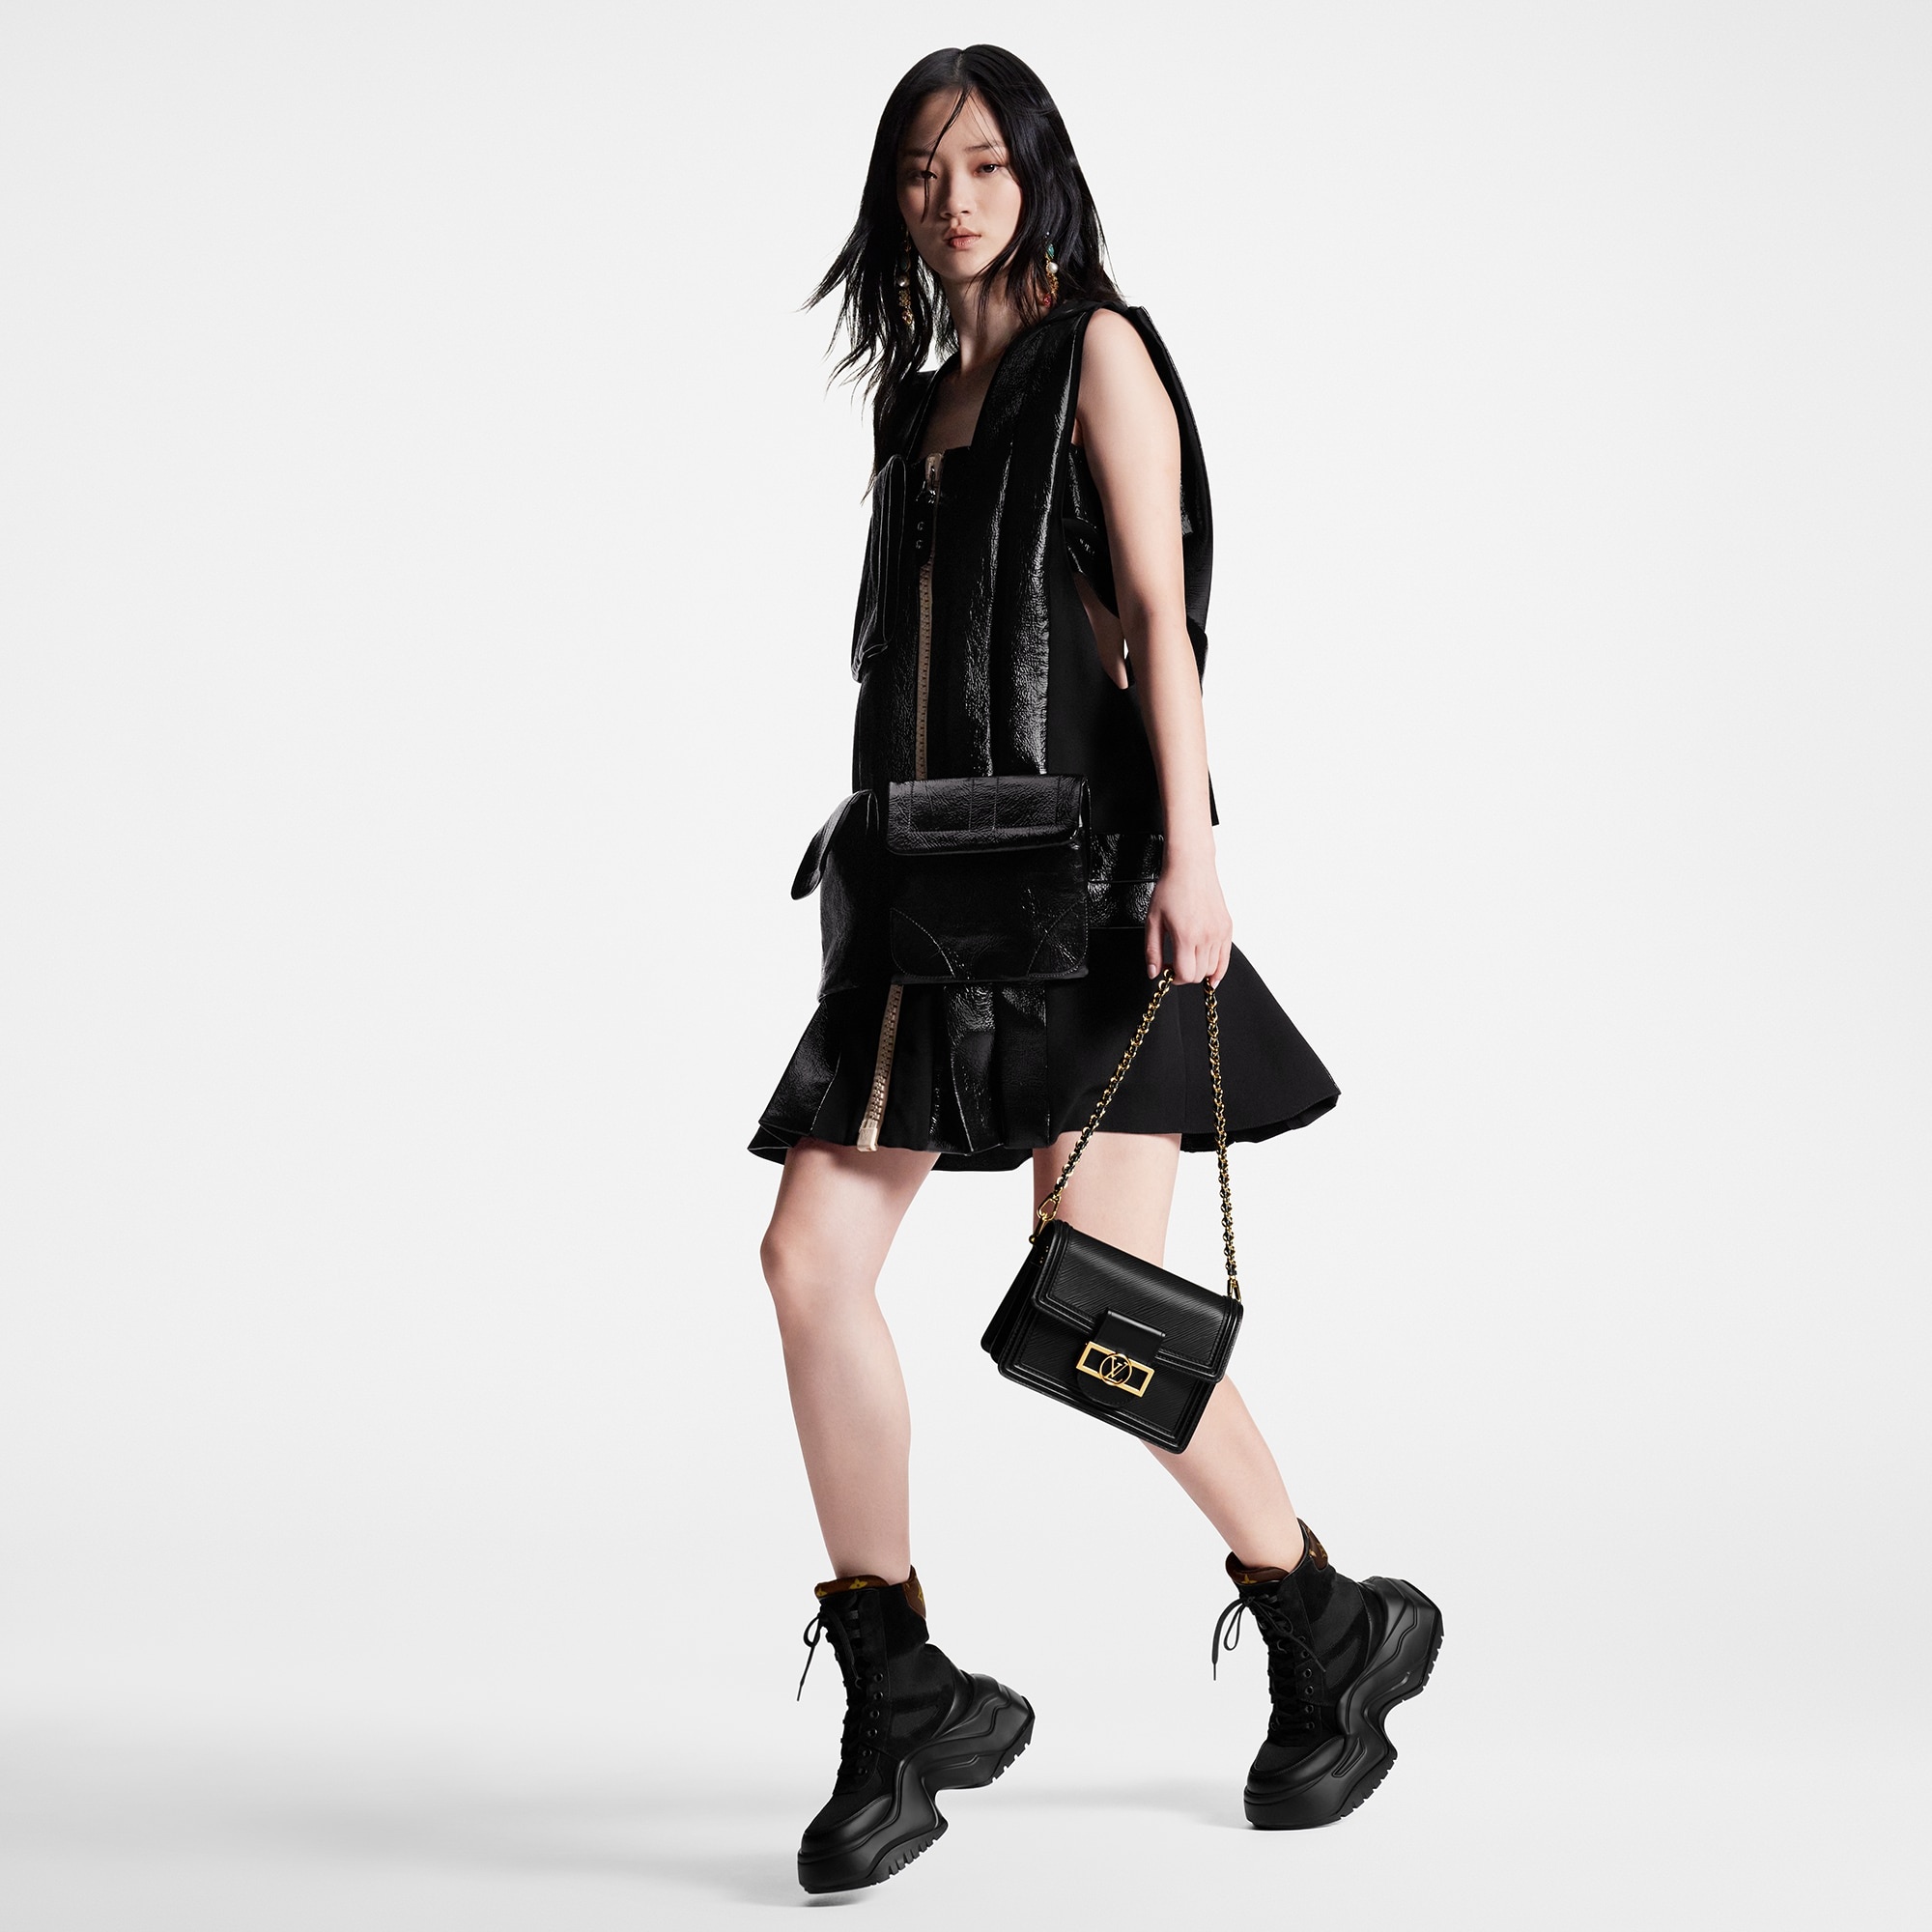 Louis Vuitton® LV Archlight 2.0 Platform Ankle Boot Khaki. Size